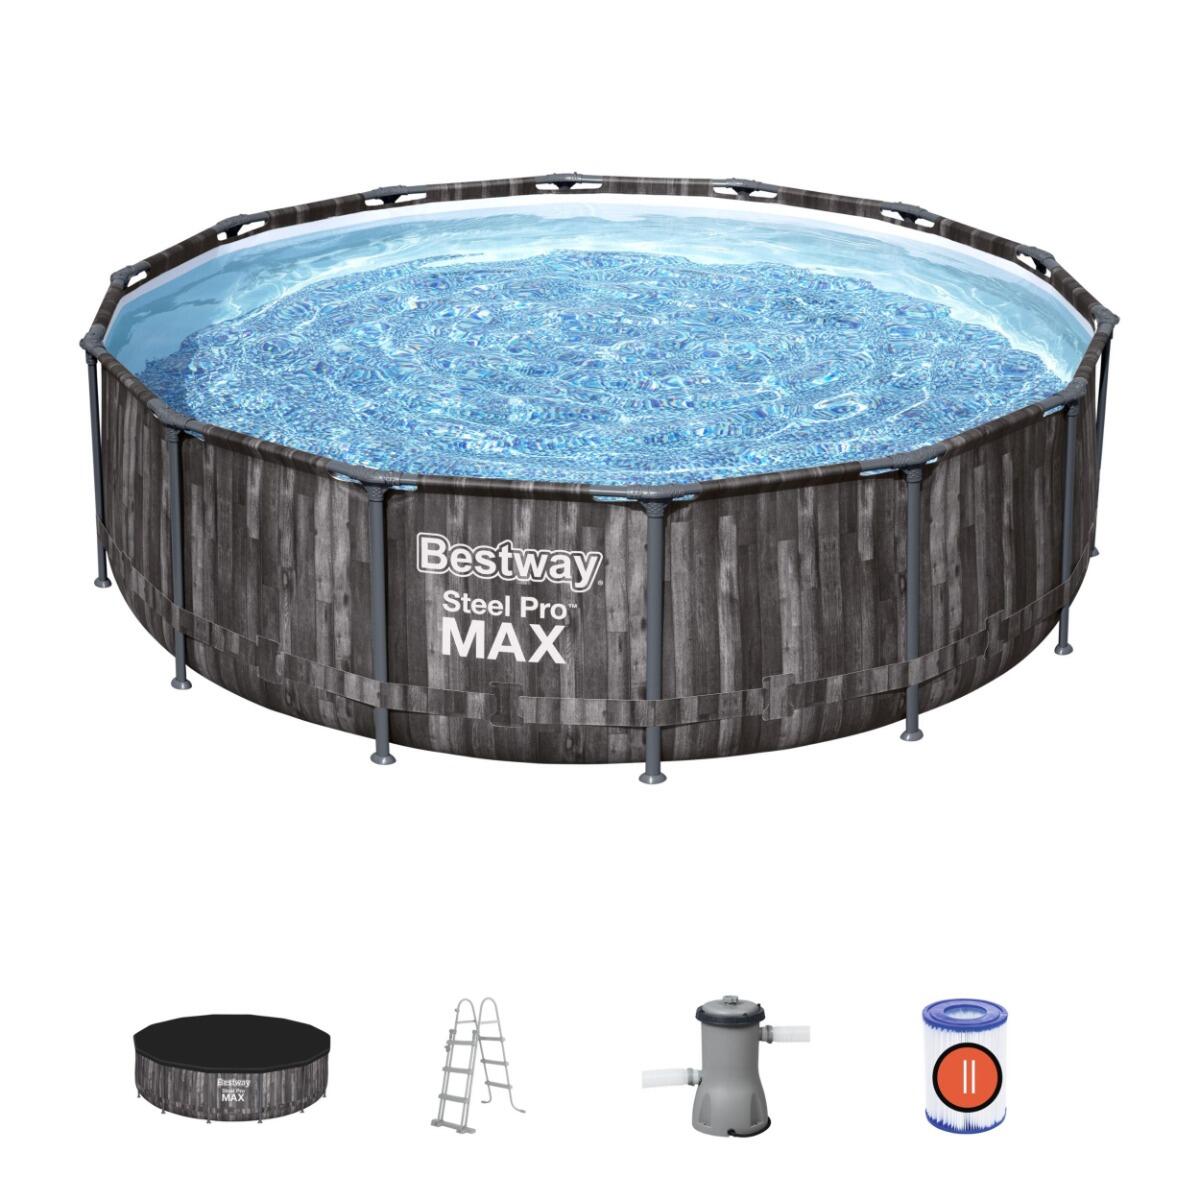 BESTWAY Bestway Steel Pro Max Grey Wooden Round Pool | Swimming Pool, Grey